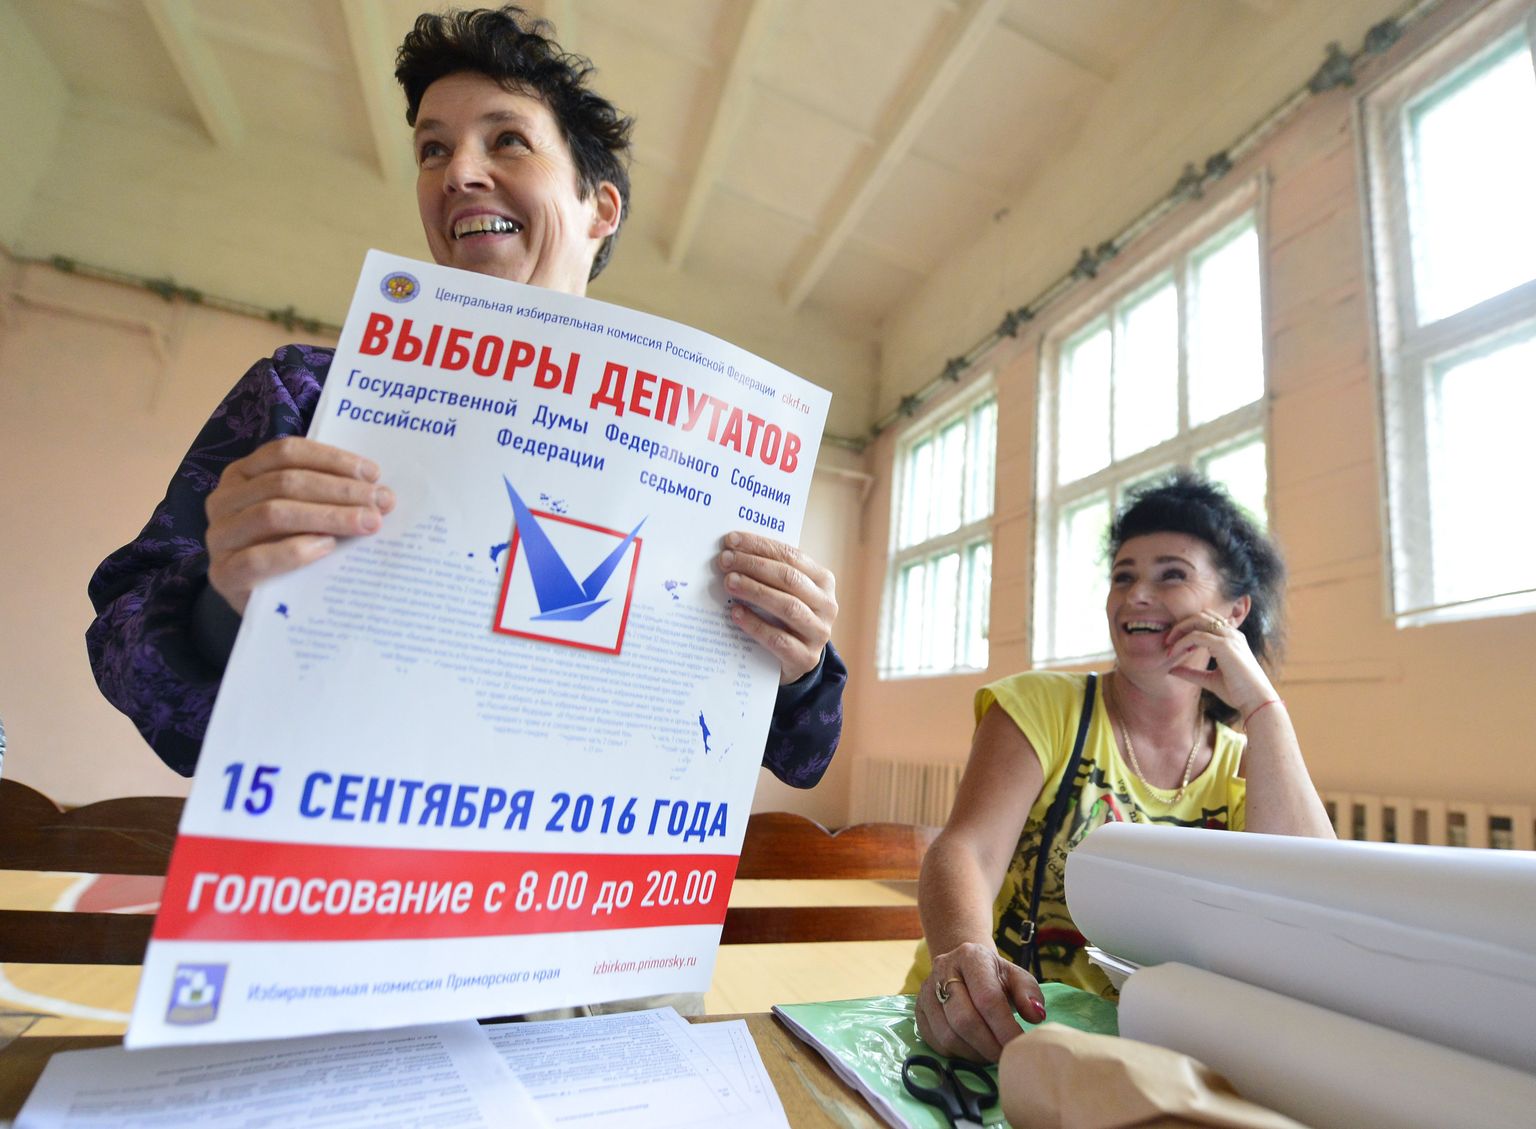 Primorski krai valimisametnikud suursündmuseks valmistumas. Ümbrikust väljuvad hääletussedelid.